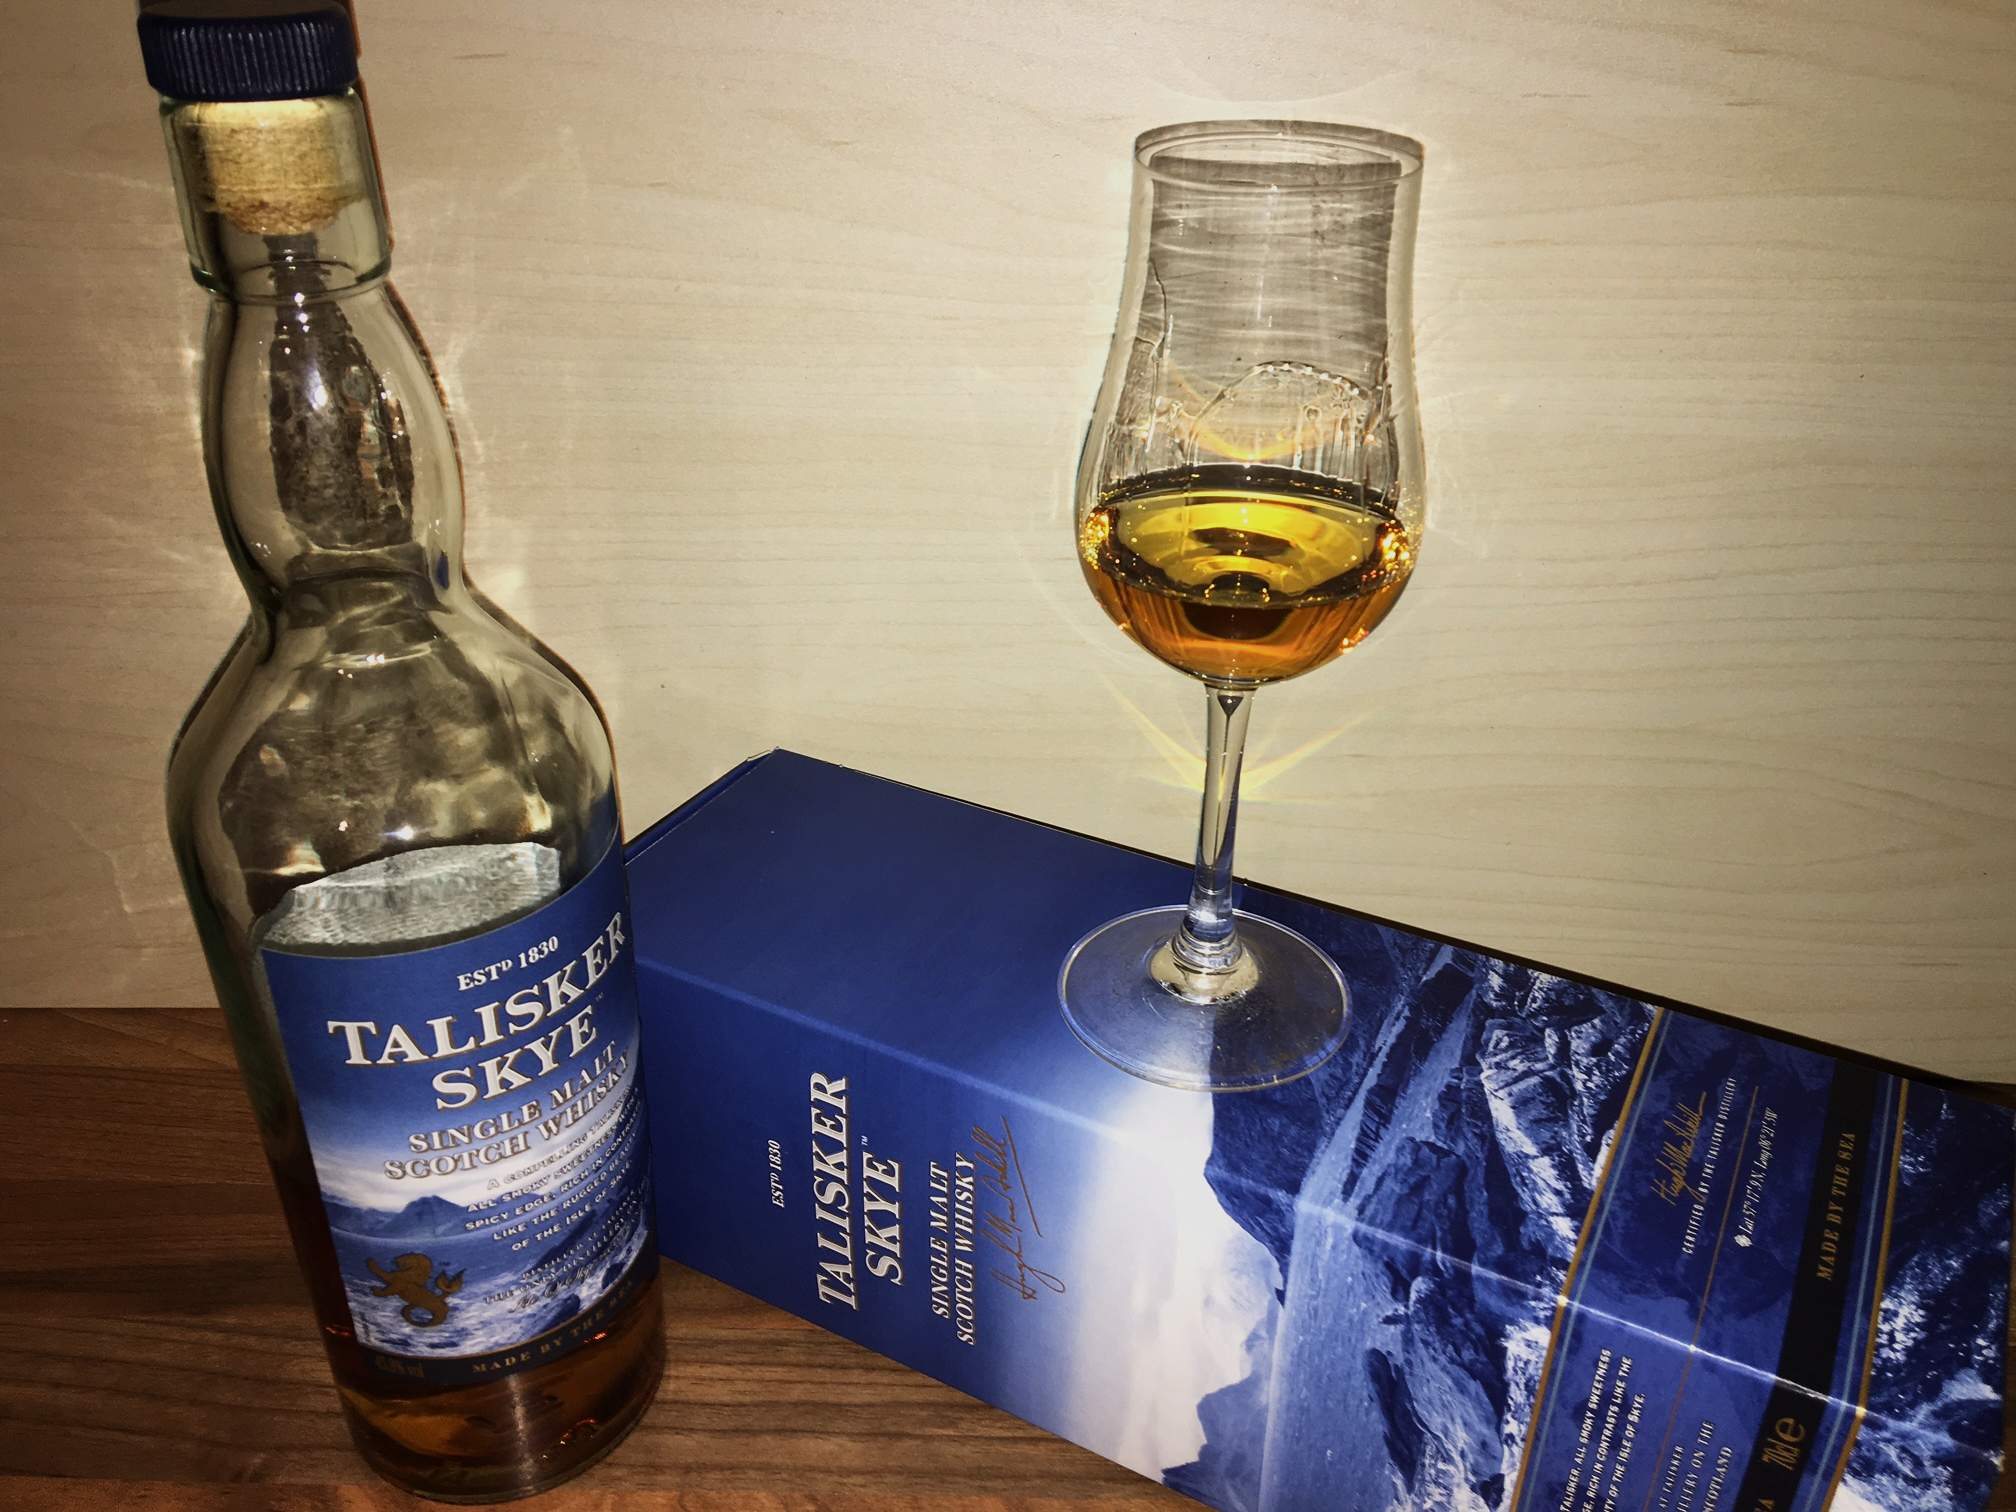 Der Talisker Skye Single Malt stammt - anders als viele meinen - nicht von der Insel Islay.